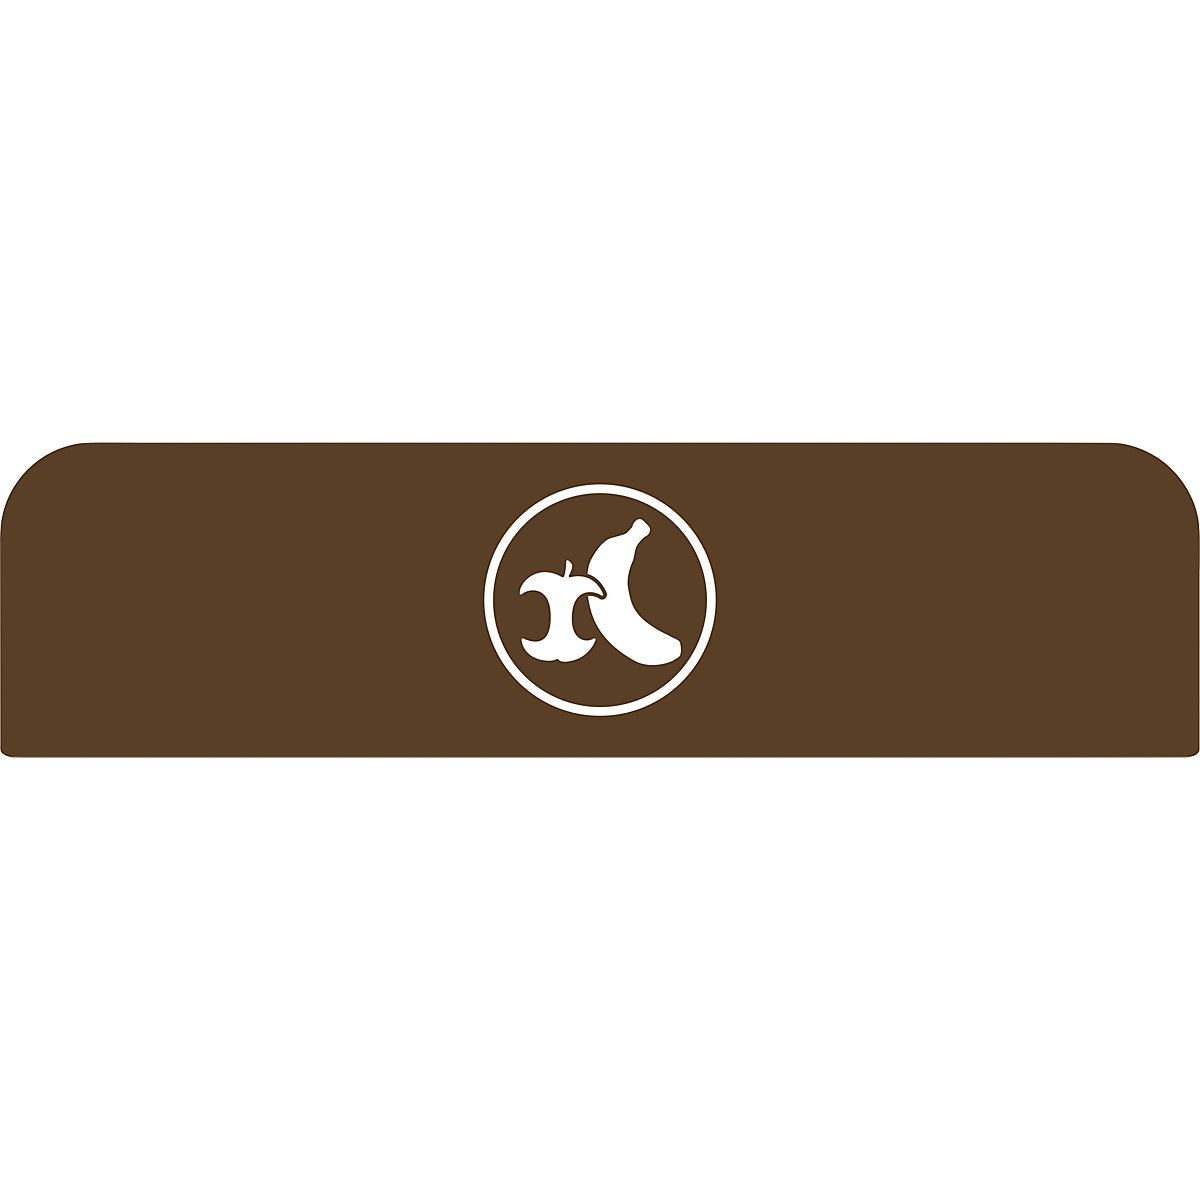 Placa indicadora Configure™ – Rubbermaid, para recipientes de 125 l, marrón-5